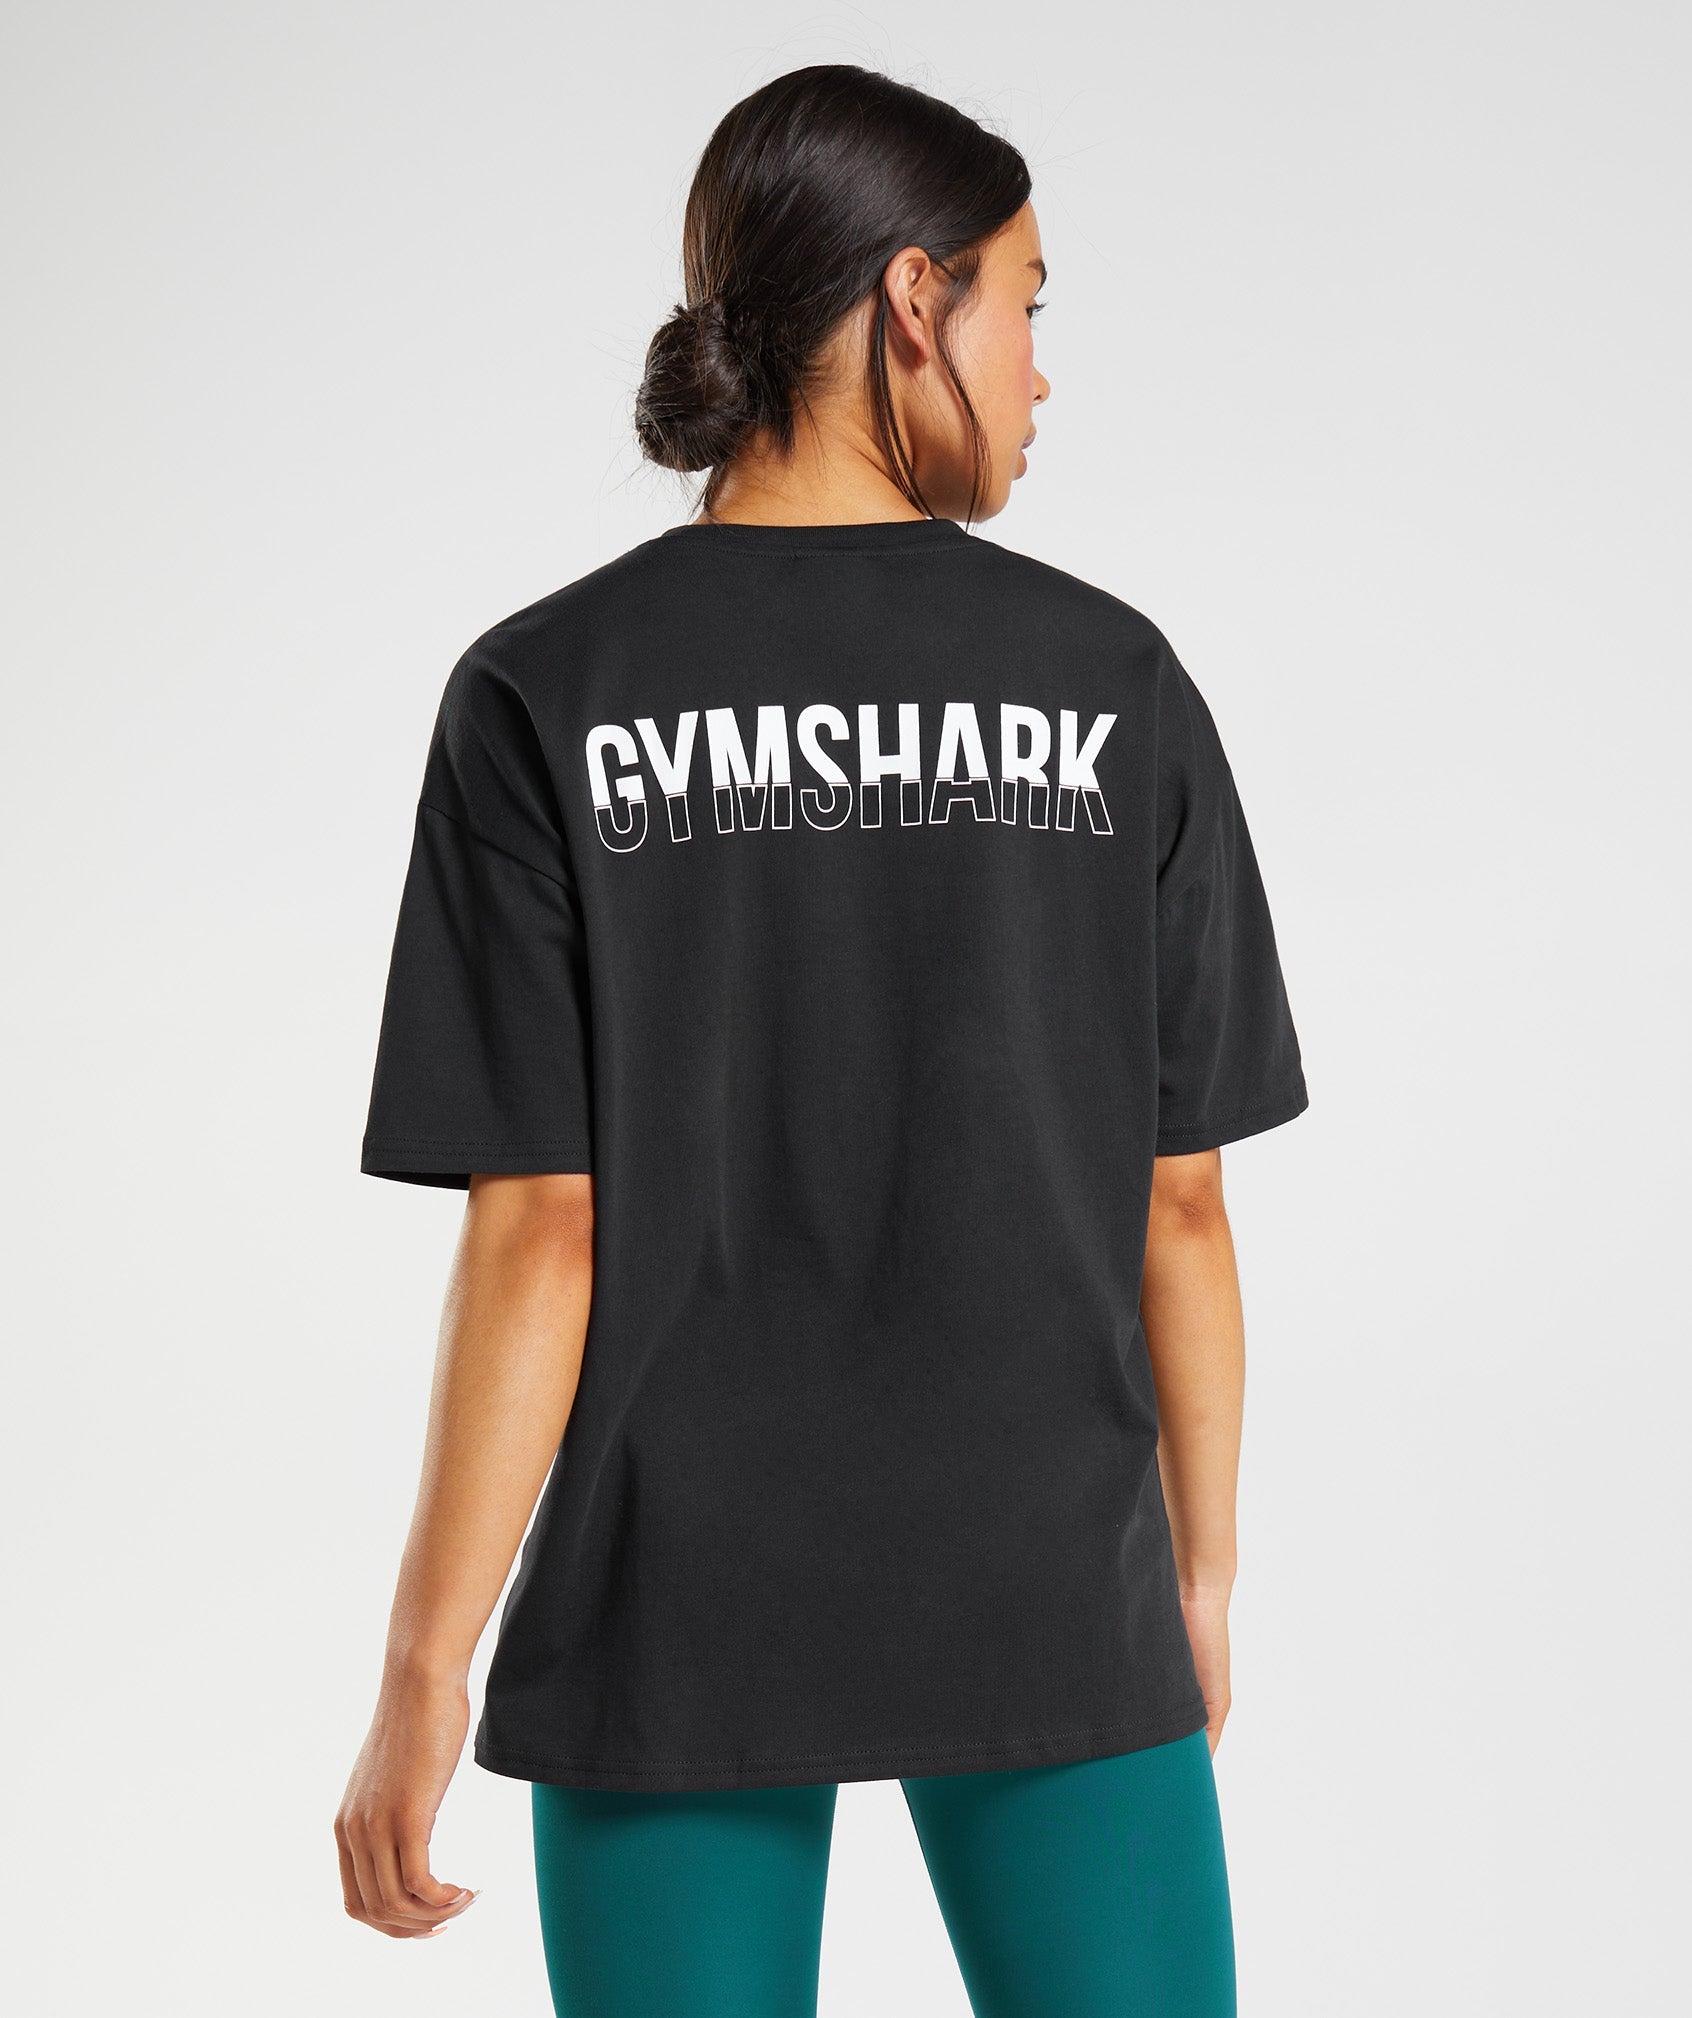 Gymshark Fraction Crop Top - Black/White